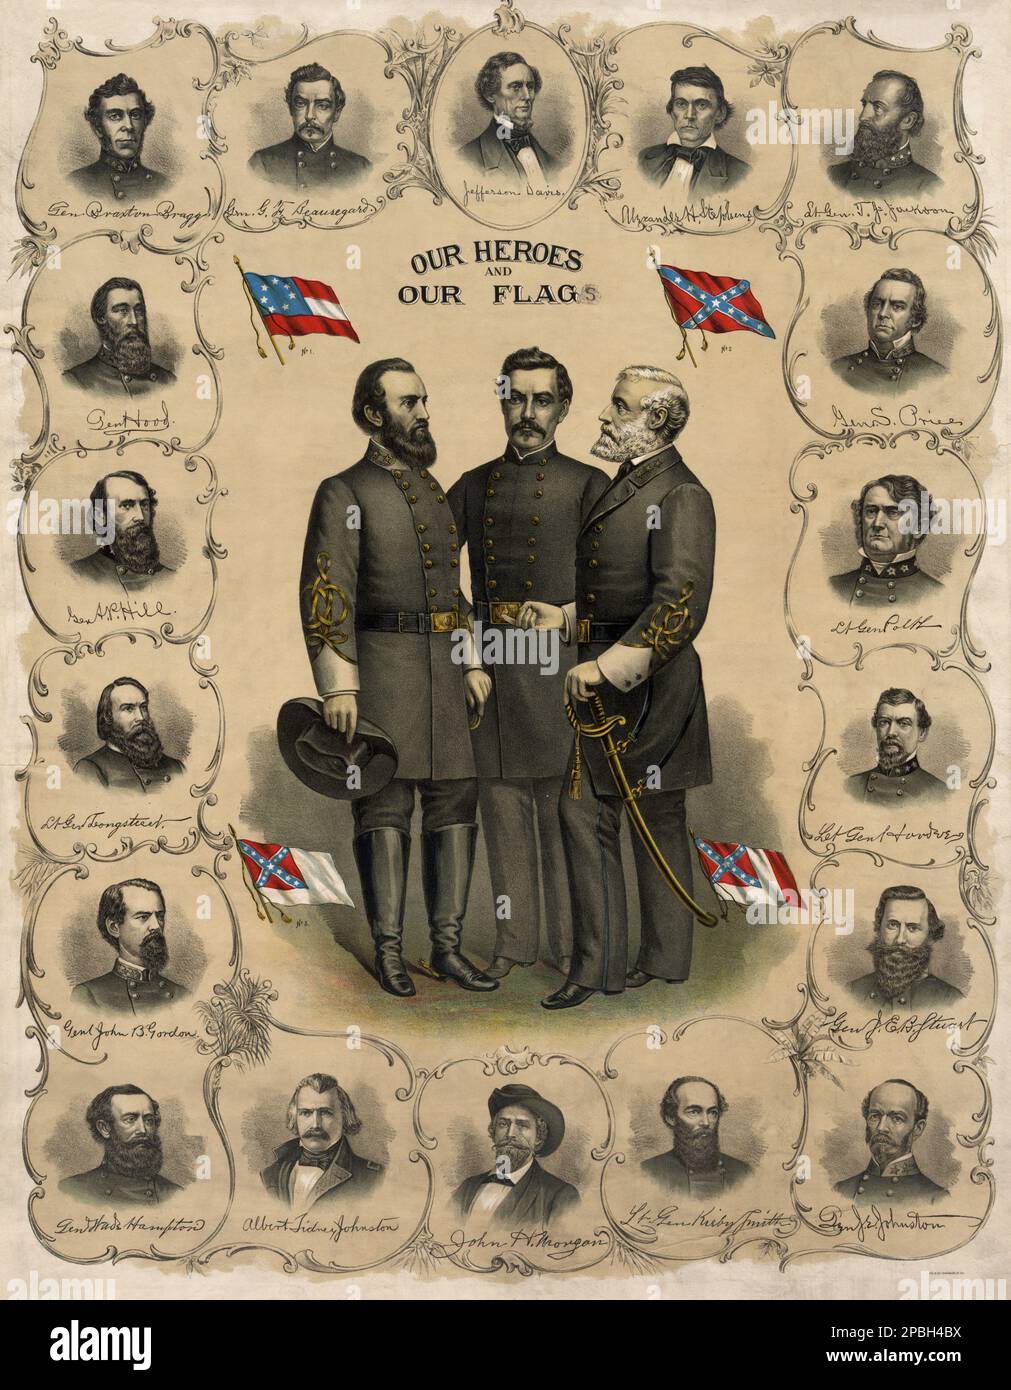 ' I nostri eroi e la nostra bandiera ' . Litografia 1896 di Southern Litography Co . Stampa che mostra i ritratti completi di Robert E. Lee, Stonewall Jackson e G.T. Beauregard con quattro versioni della bandiera confederata circondata da ritratti busto di Jefferson Davis e ufficiali dell'esercito confederato. Il generale ROBERT E. LEE ( 1807 - 1870 ) dell'esercito confederato . Lee era un ufficiale dell'esercito degli Stati Uniti, un ingegnere, e tra i più celebrati generali della storia americana.- SECESSION WAR CIVIL - GUERRA civile DI SECESSIONE AMERICANA - cappello - uomo anziano - barbe Foto Stock